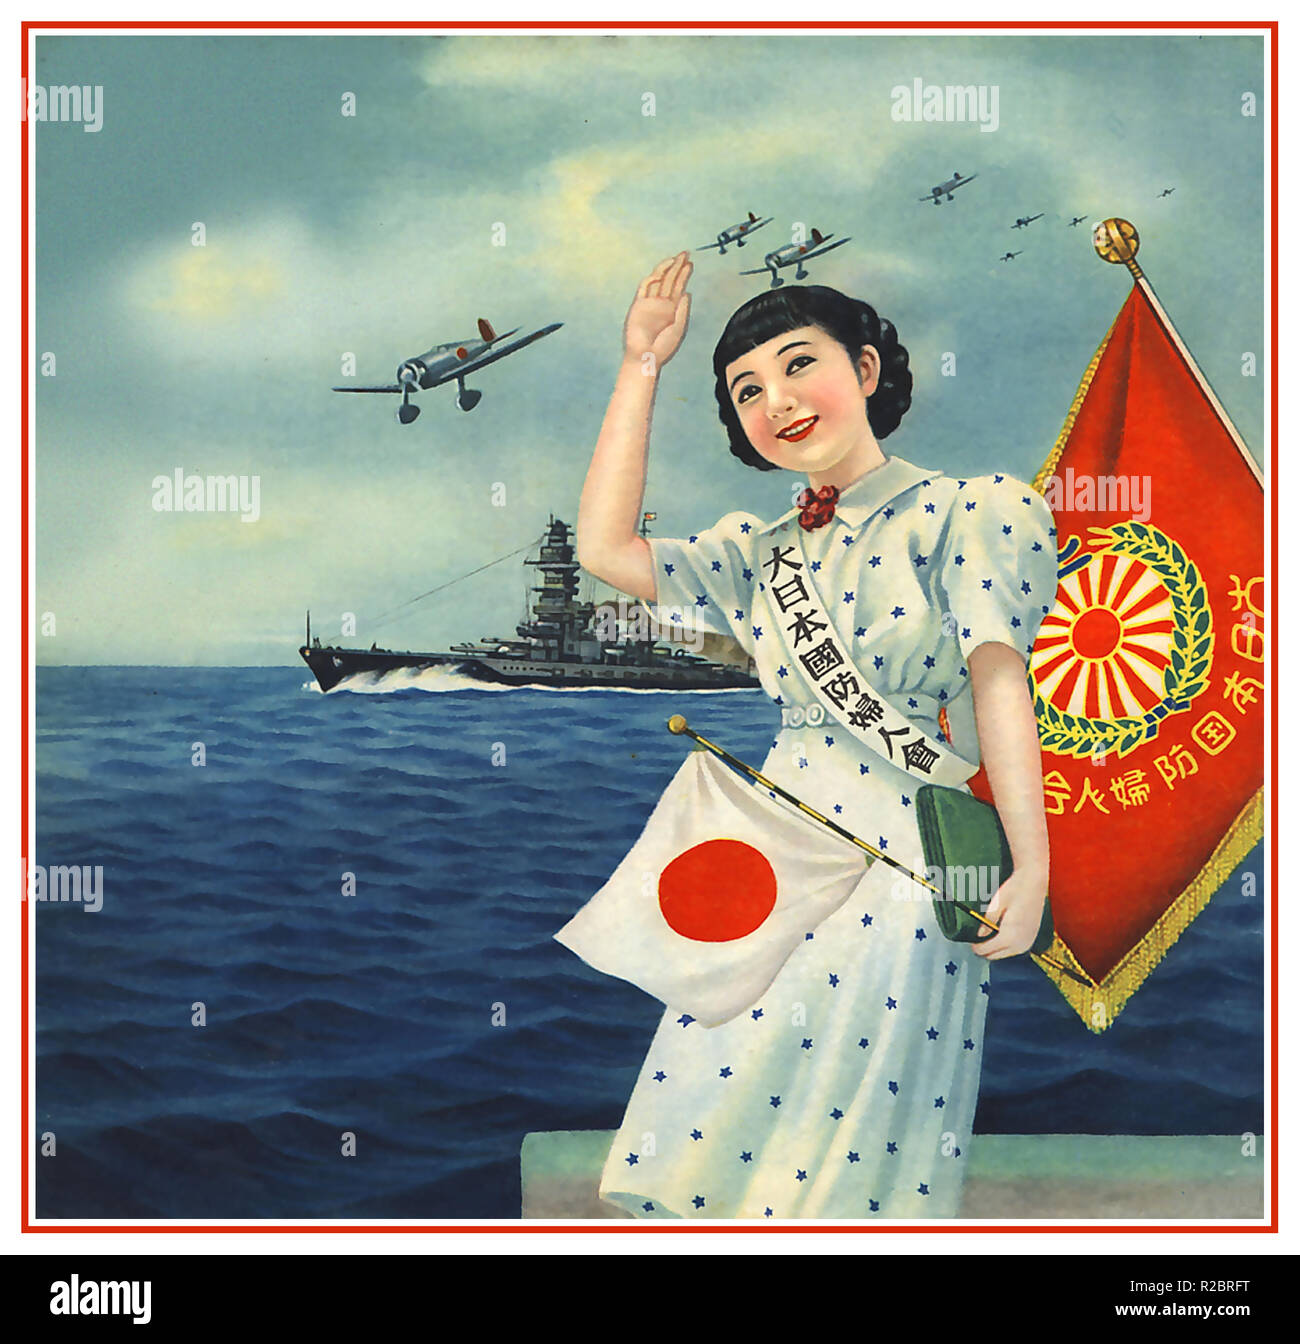 WW 2 1940 japanische Propaganda Poster aus der Verein mehr Japan nationale Verteidigung Frauen zeigen junge Pin-up-Girl zu Kamikaze Piloten fliegen auf eine tödliche eine Art Mission für Ihr Land. Kamikaze, offiziell Tokubetsu Kōgekitai, waren ein Teil der japanischen Special Attack Units der Militärflieger initiiert Bombardierung Selbstmordattentate für das Kaiserreich Japan gegen die Alliierten Kriegsschiffe im pazifischen Kriegsschauplatz Stockfoto